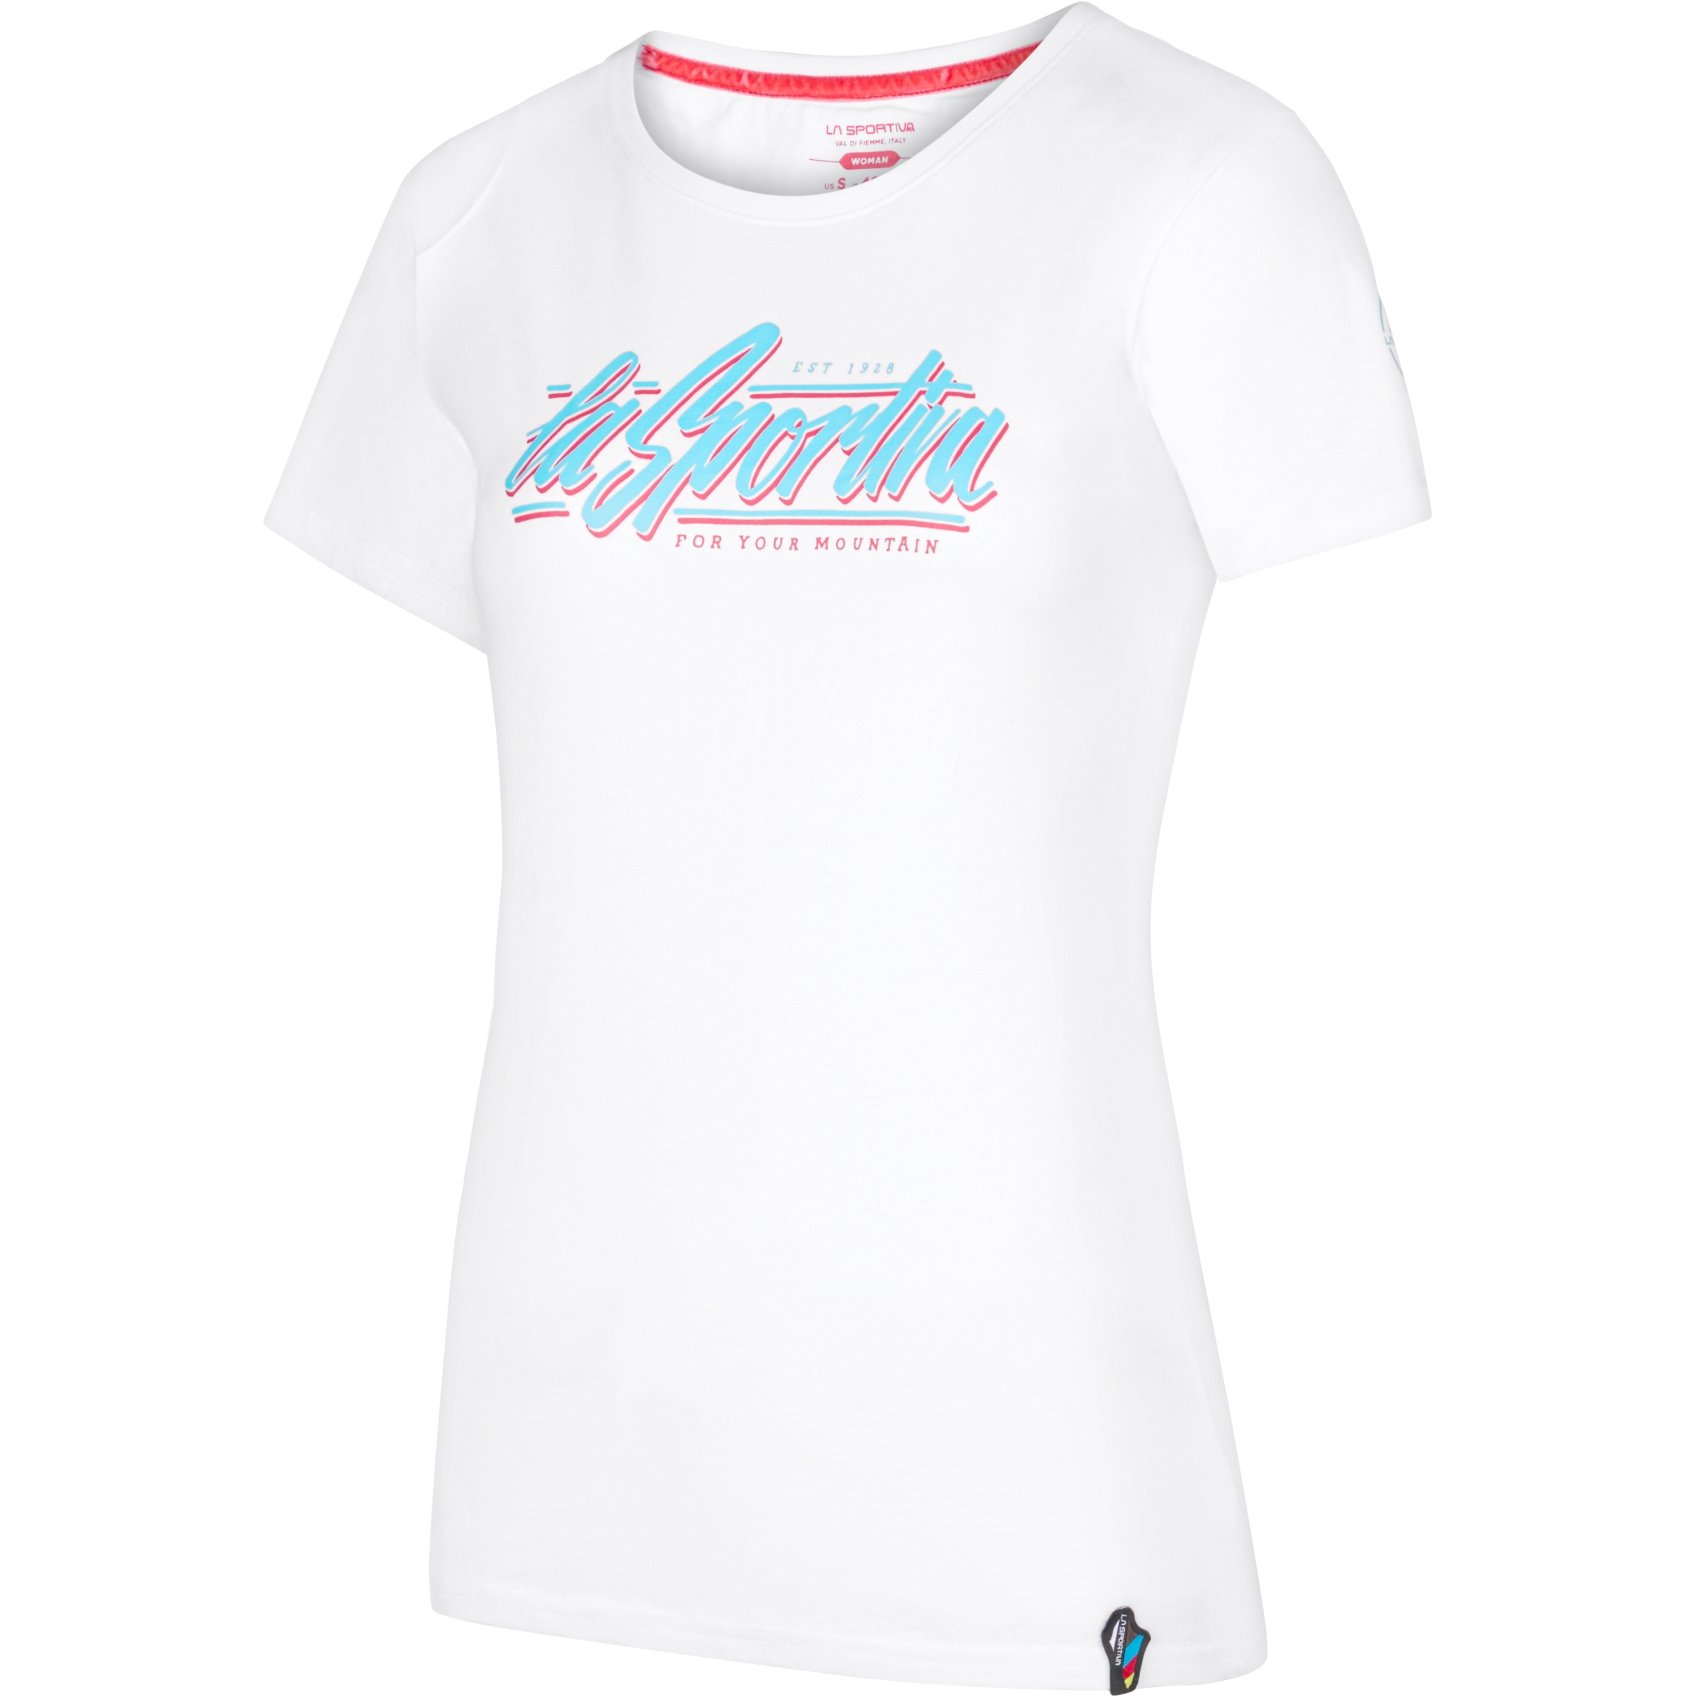 Produktbild von La Sportiva Retro T-Shirt Damen - White/Malibu Blue